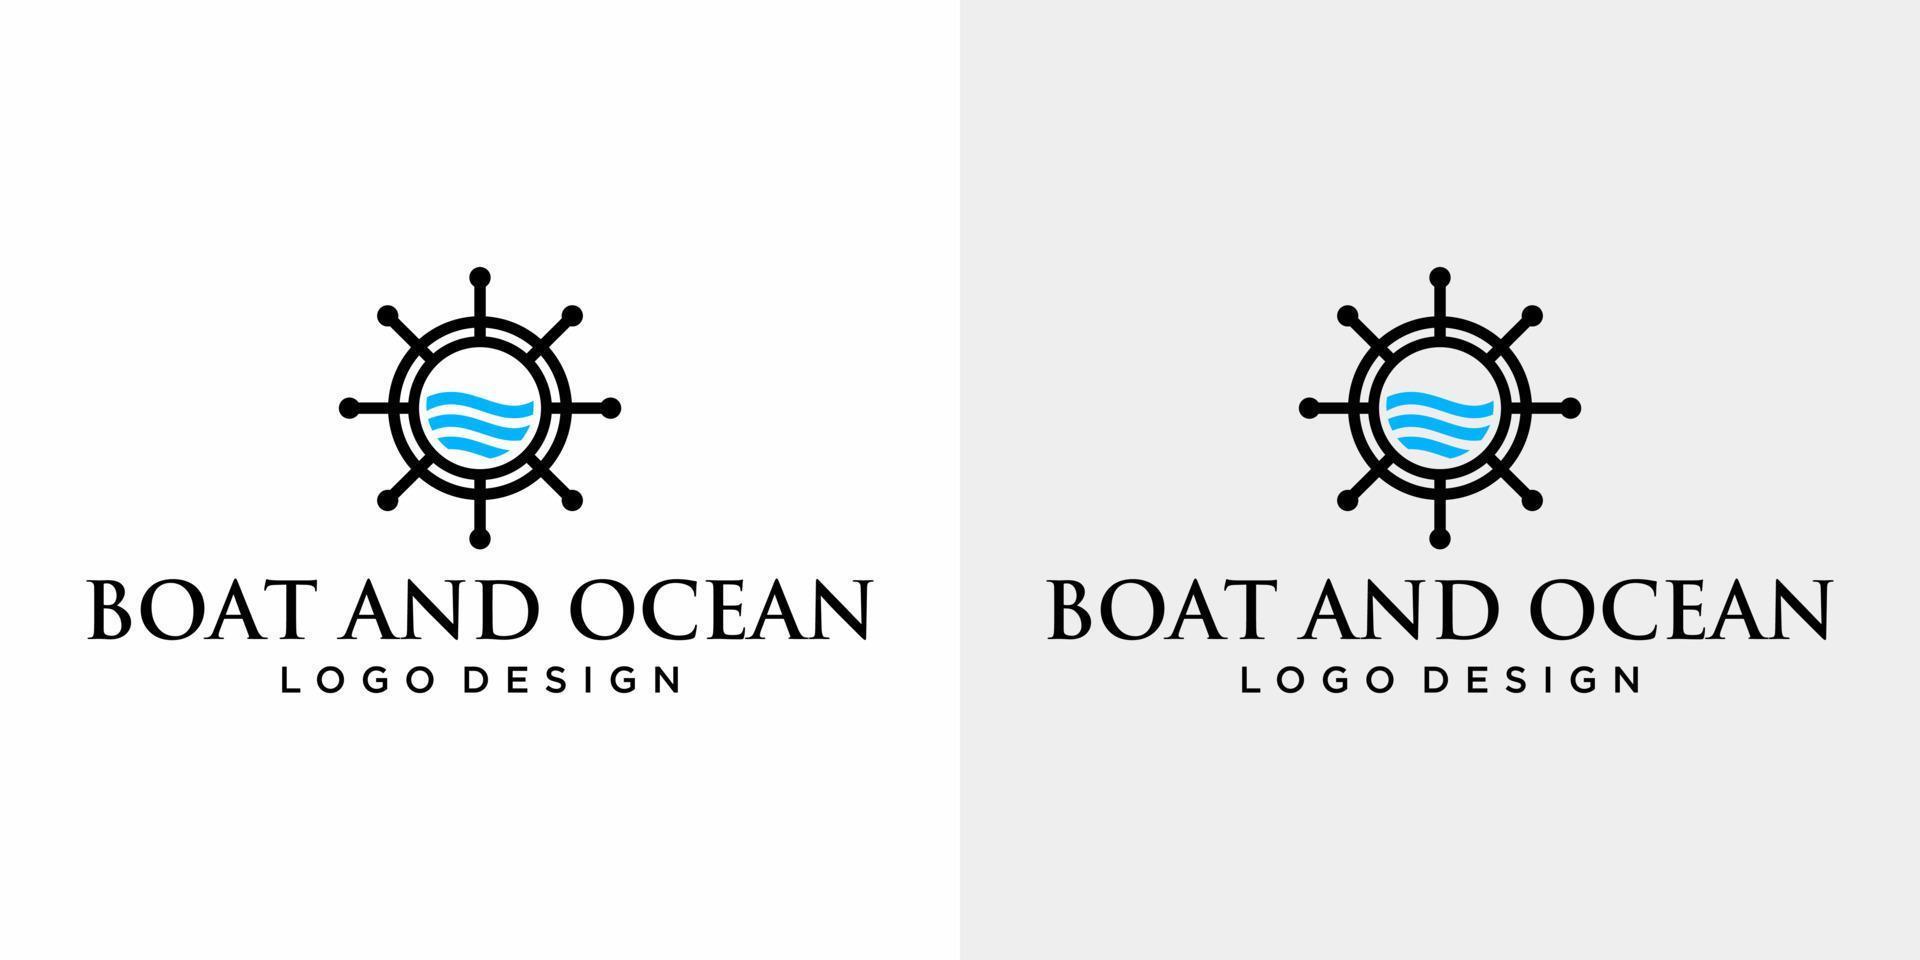 conception simpliste de logo de bateau et d'océan avec le fond blanc et noir. vecteur